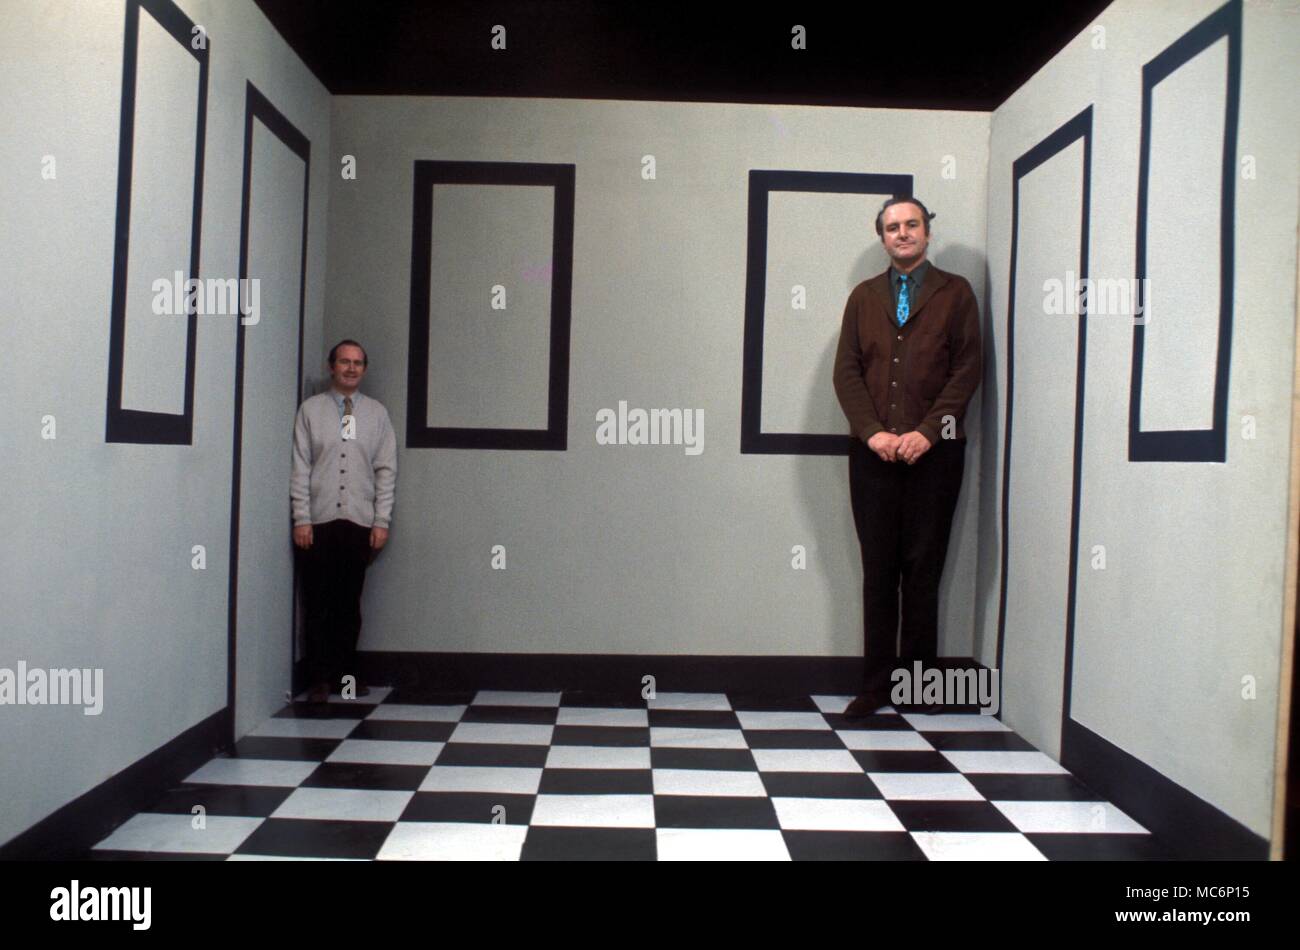 Le illusioni. Due uomini di simile altezza in piedi in una stanza di Ames progettato per creare l'illusione ottica che cambia le altezze relative degli uomini. Foto Stock